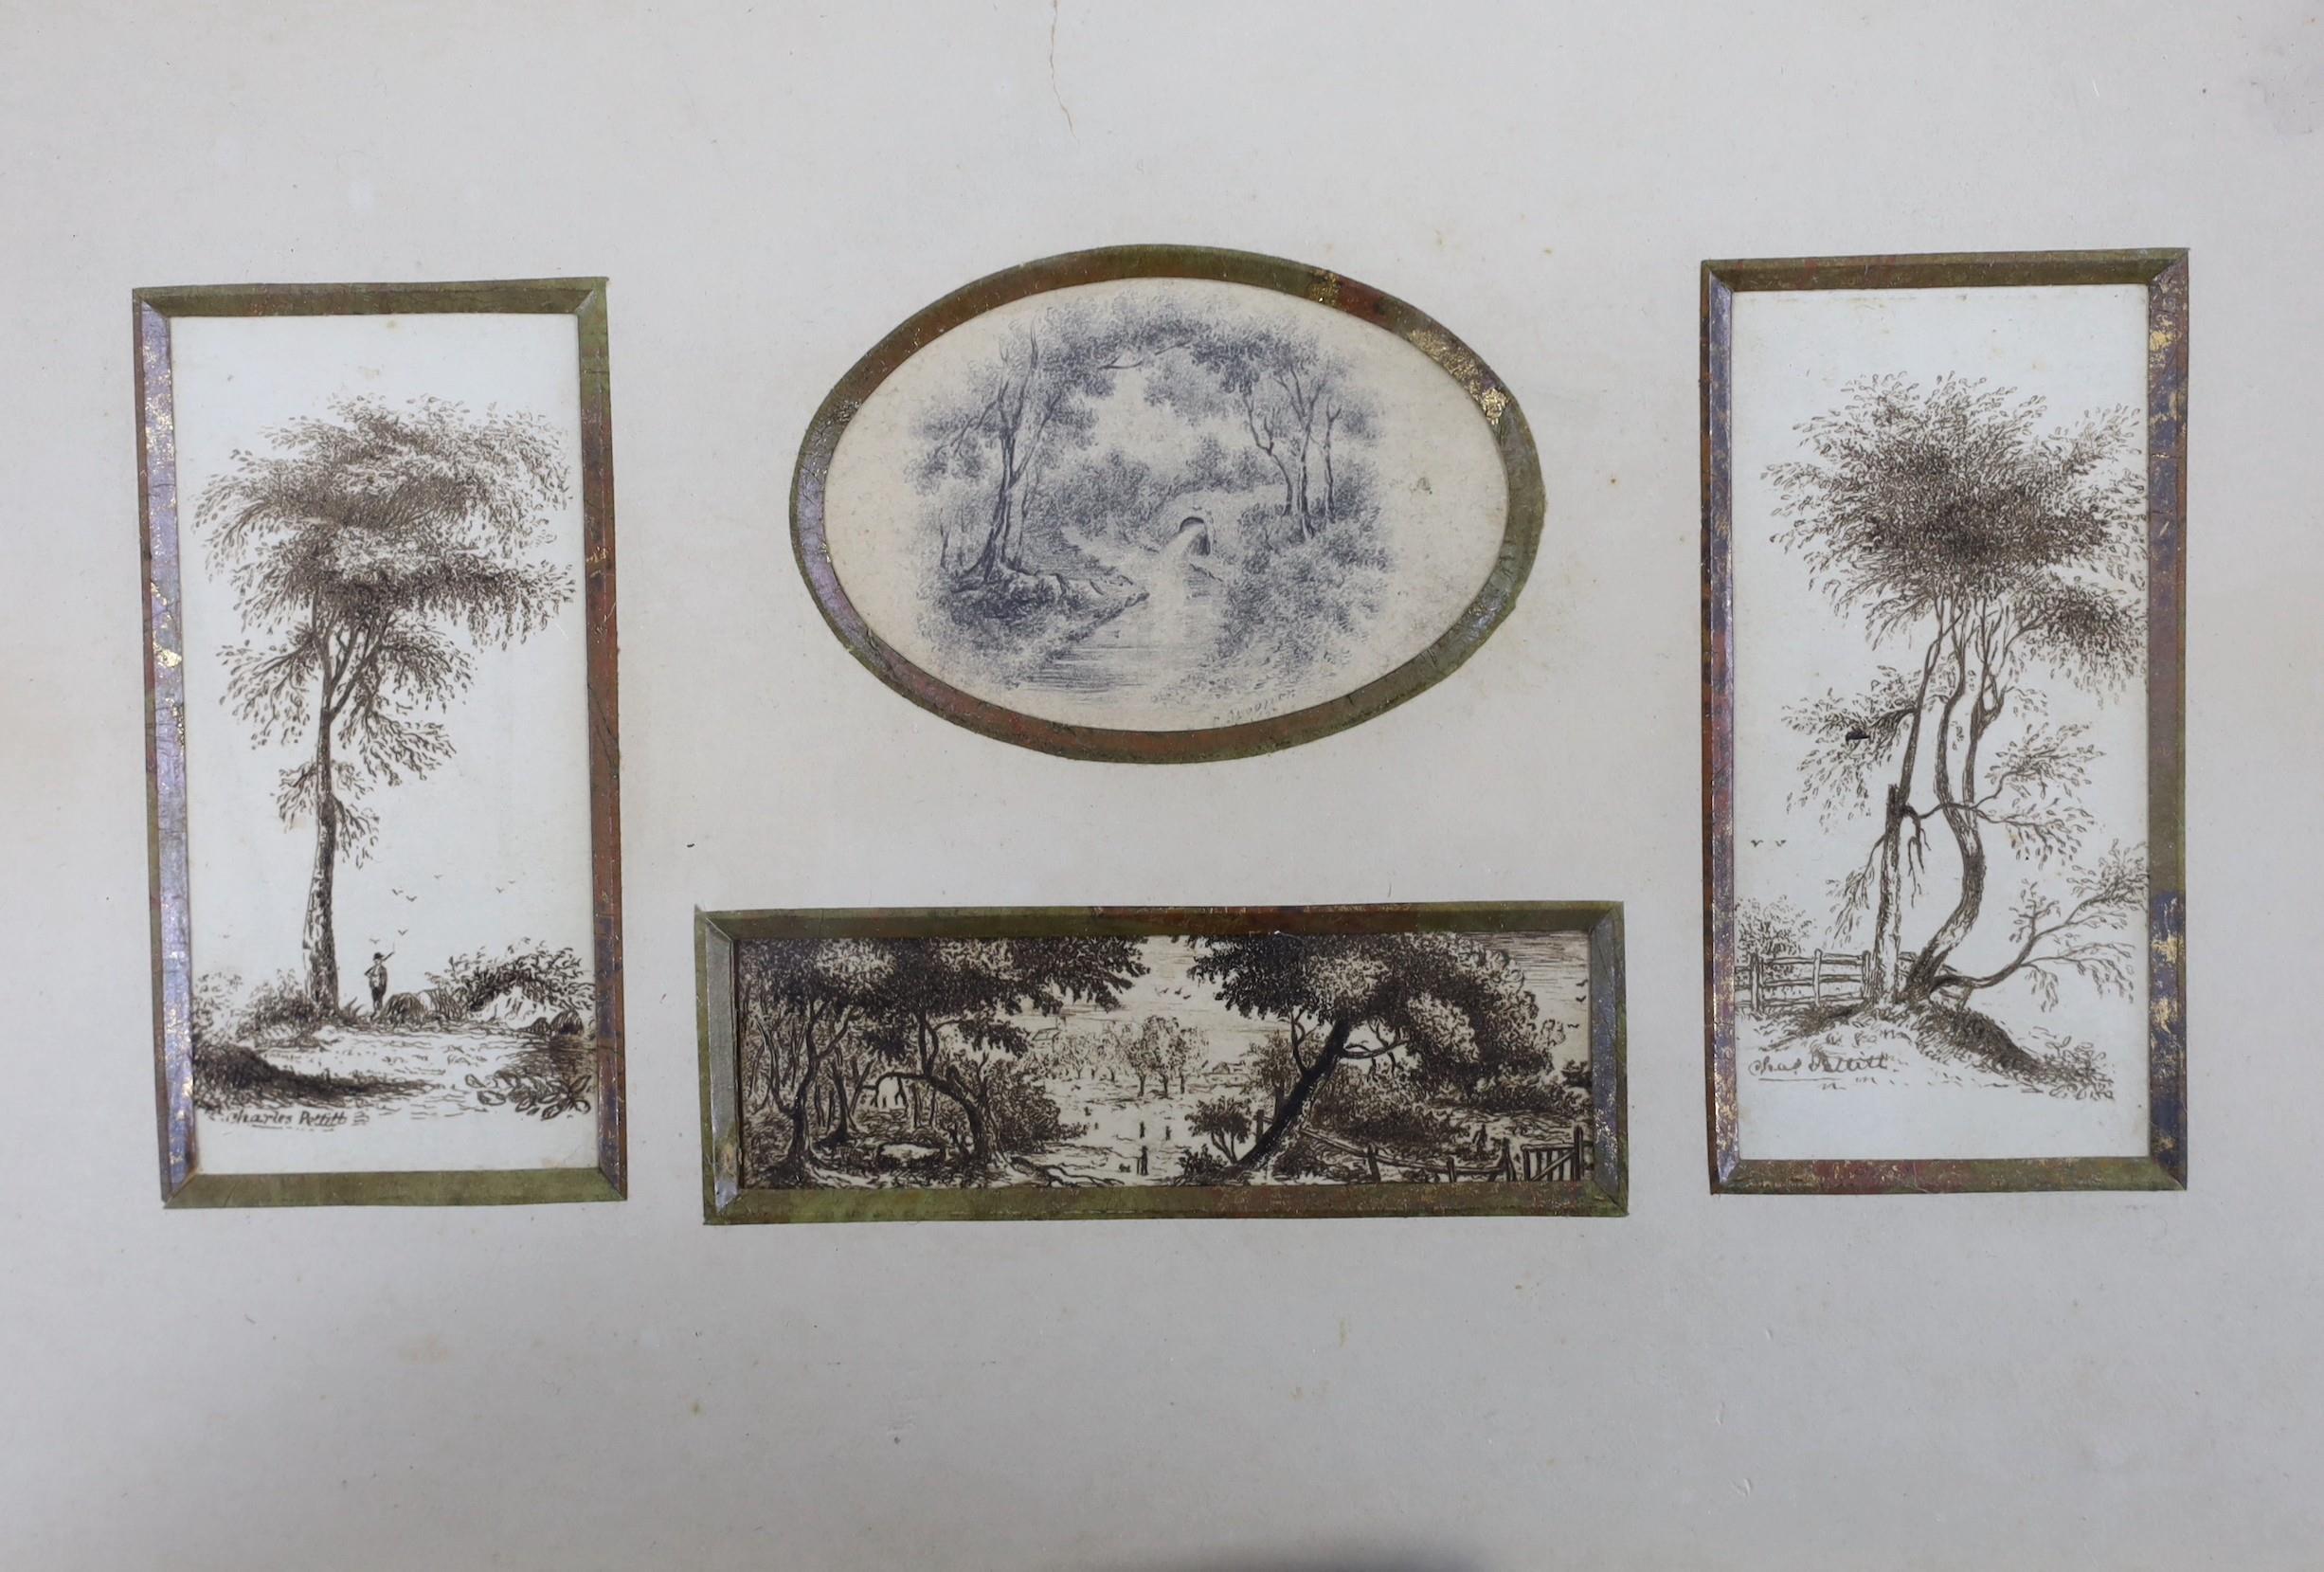 Catherine Spooner c.1850, pen and ink, Landscape vignettes, signed, largest 7 x 3.5cm, framed as